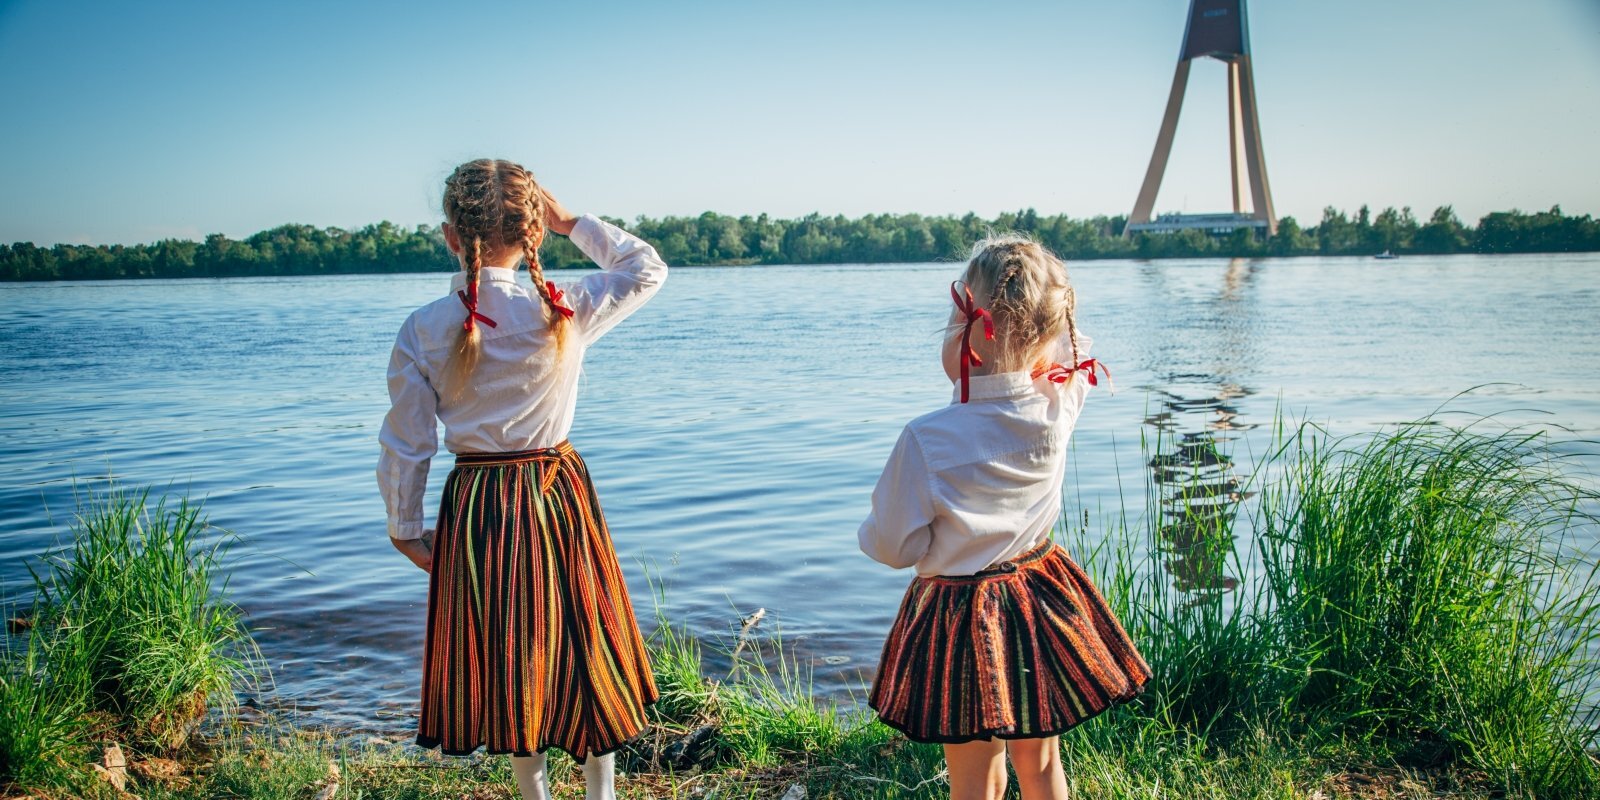 Патриоты или космополиты? Легко ли быть ребенком латвийских эмигрантов и ремигрантов